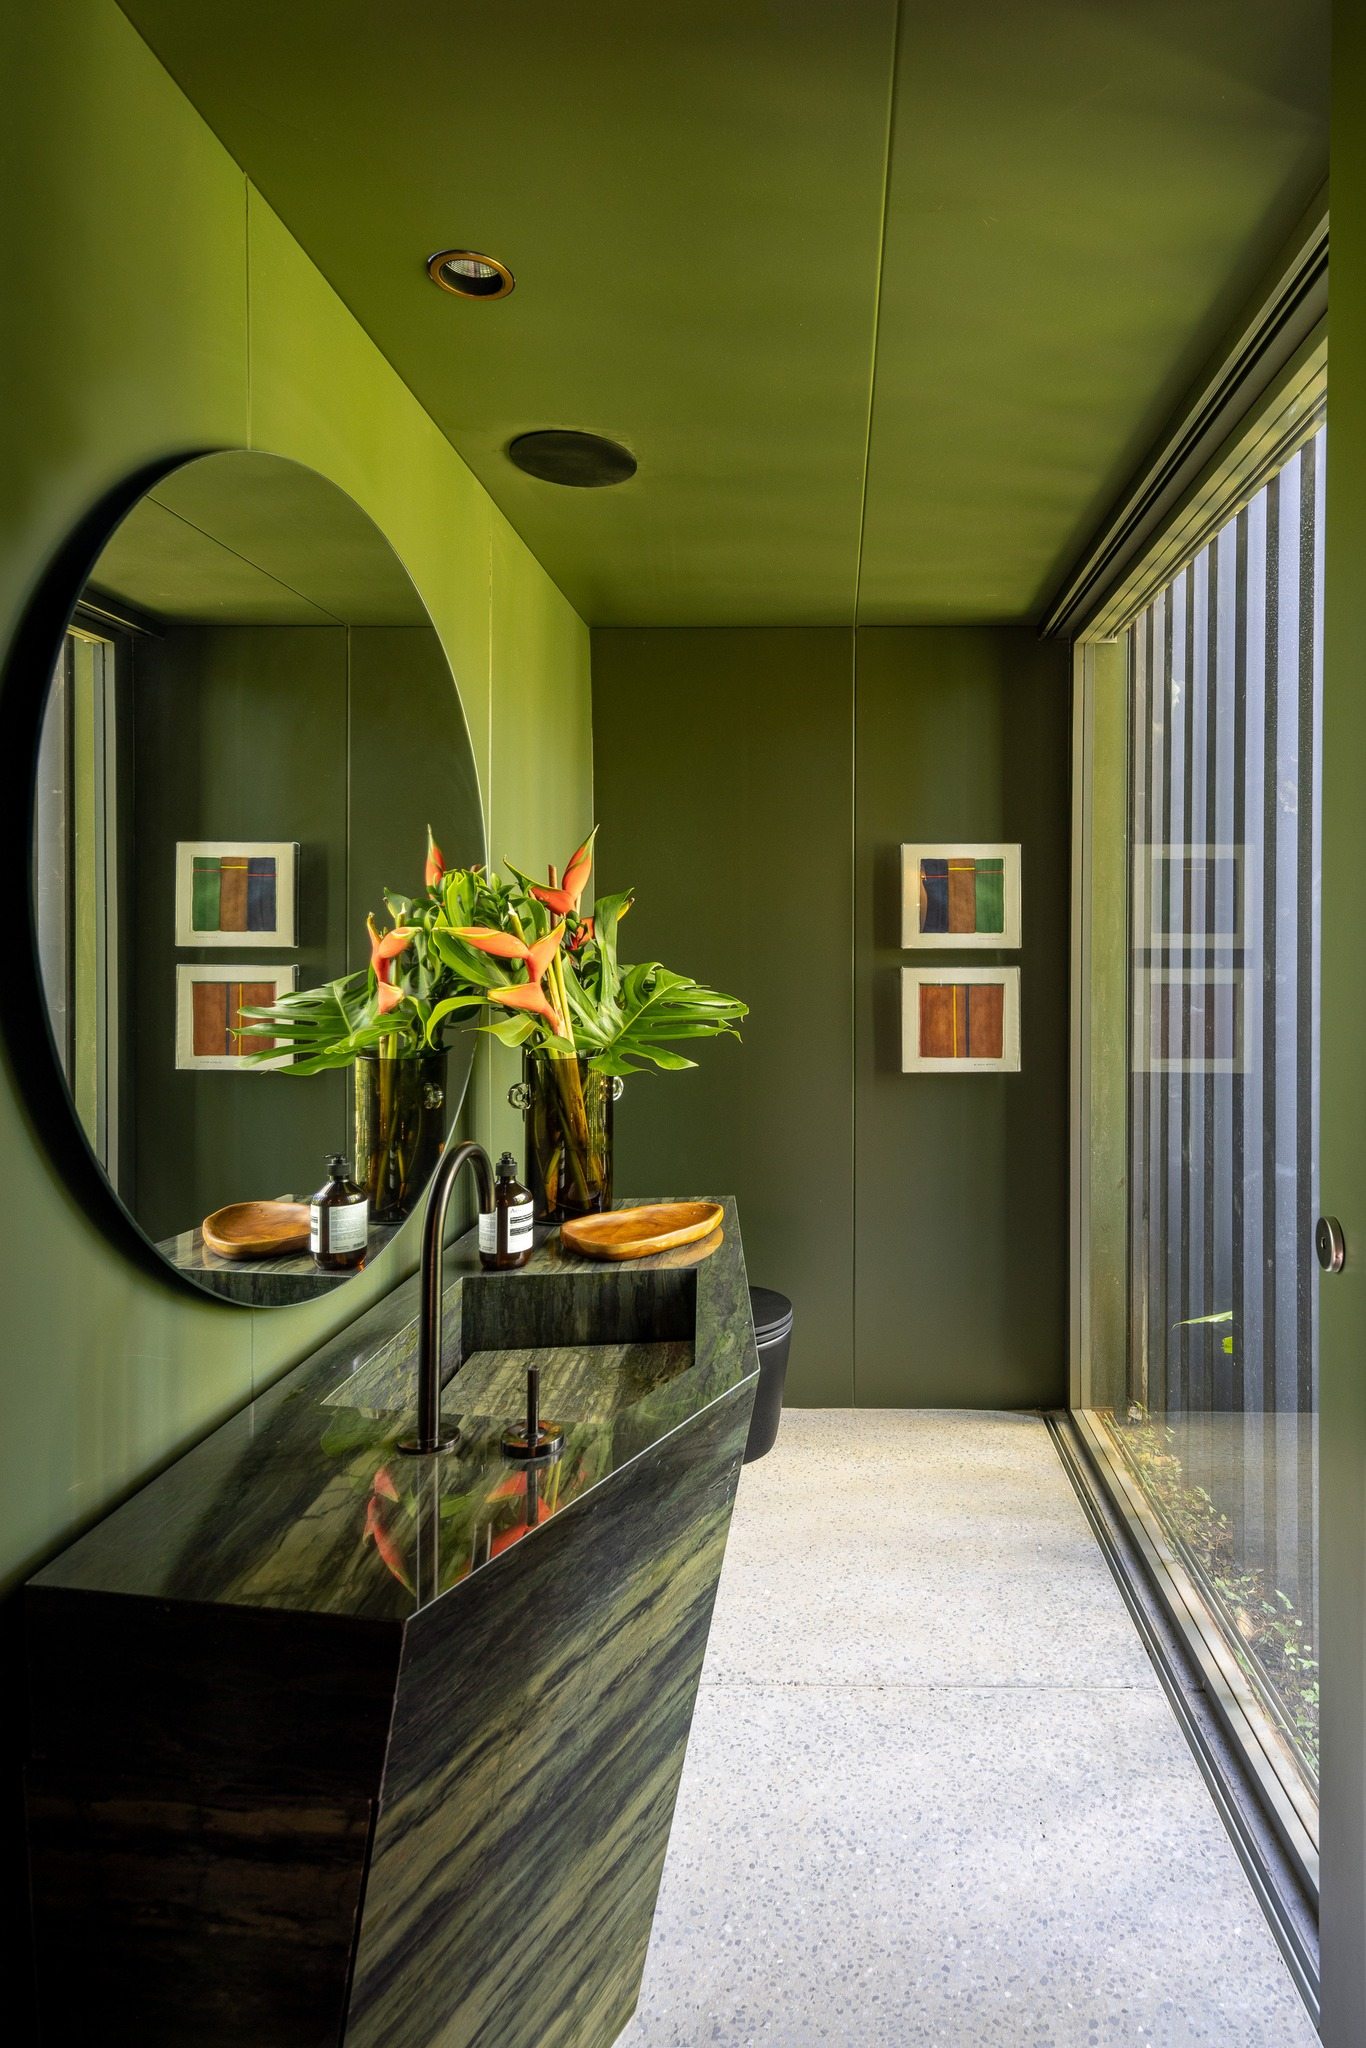 Không gian nhà tắm lấy ý tưởng từ sắc xanh của cây cối